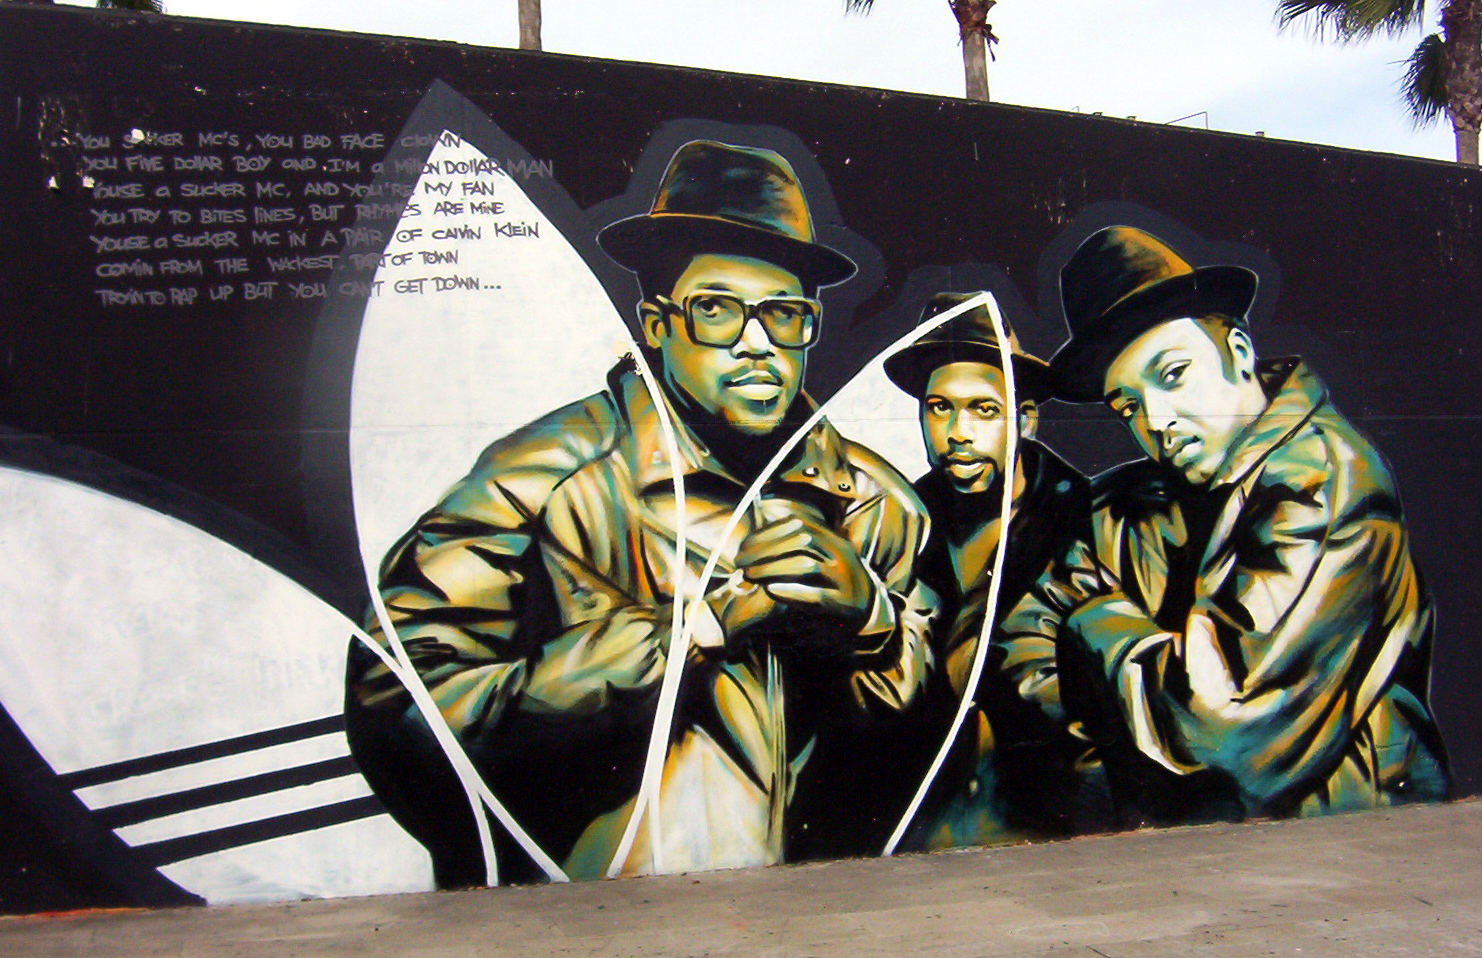 Wallpapers de Raperos Graffitis y Motivos Rastafaris